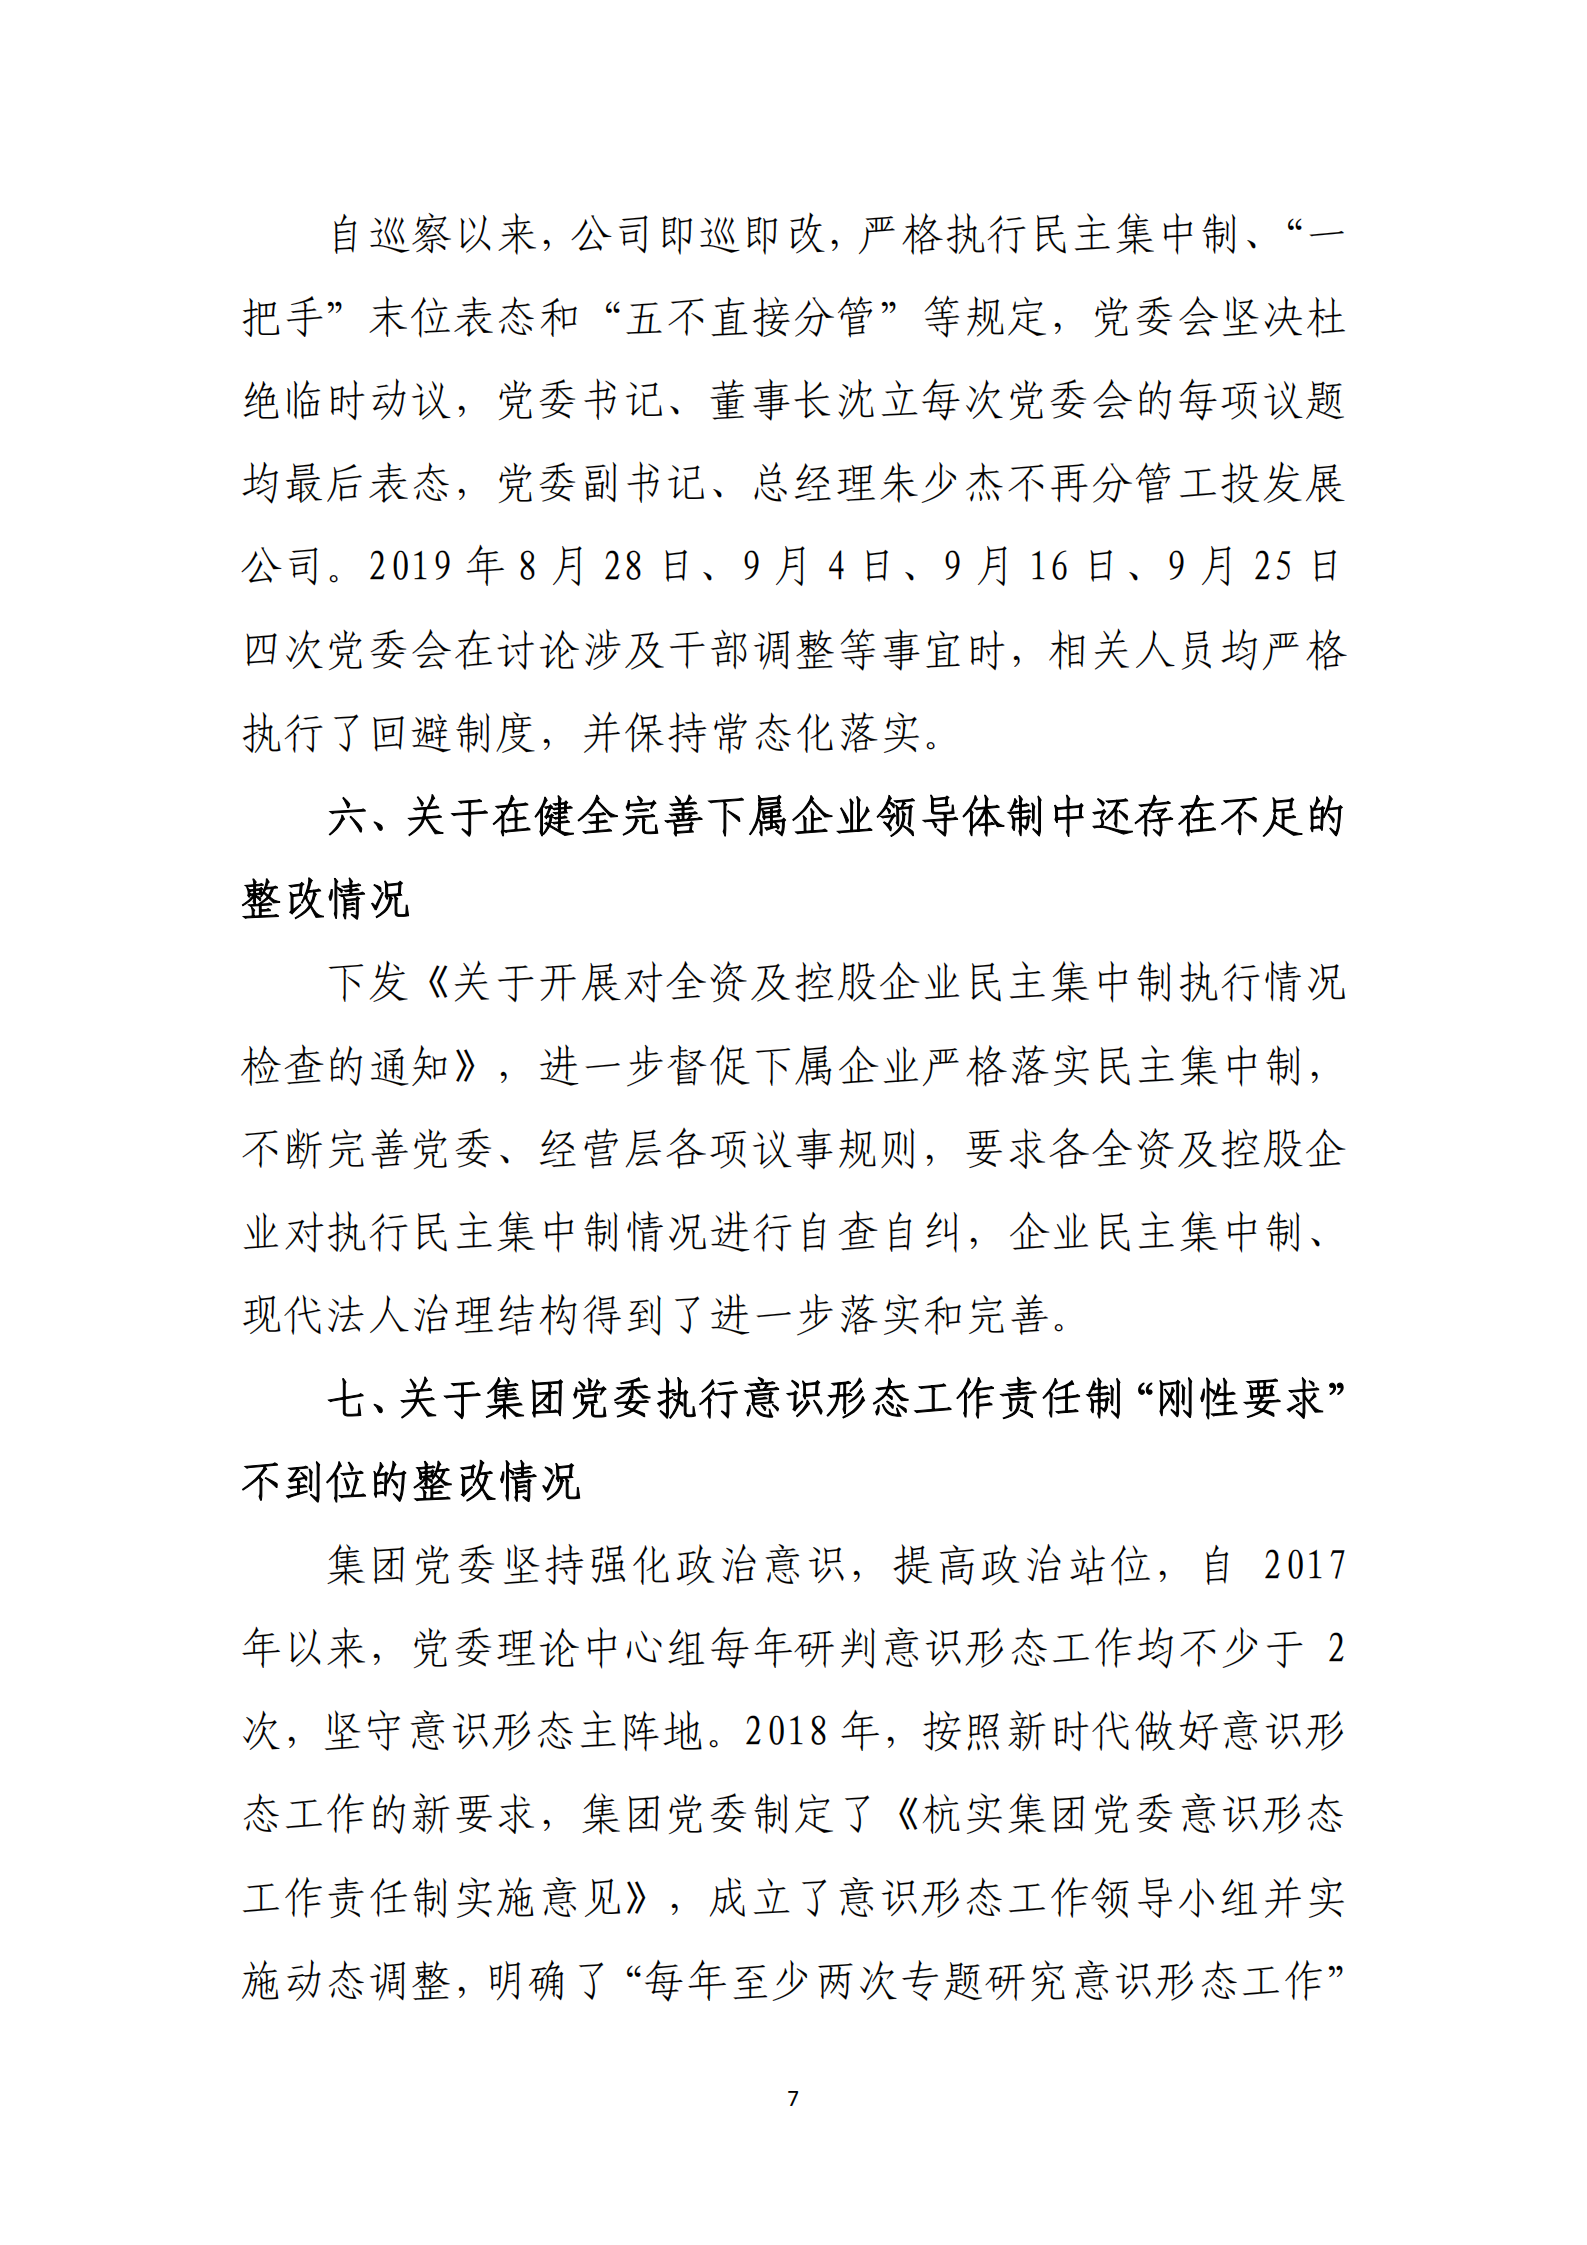 【体育365官方网站】中国有限公司党委关于巡察整改情况的通报_06.png